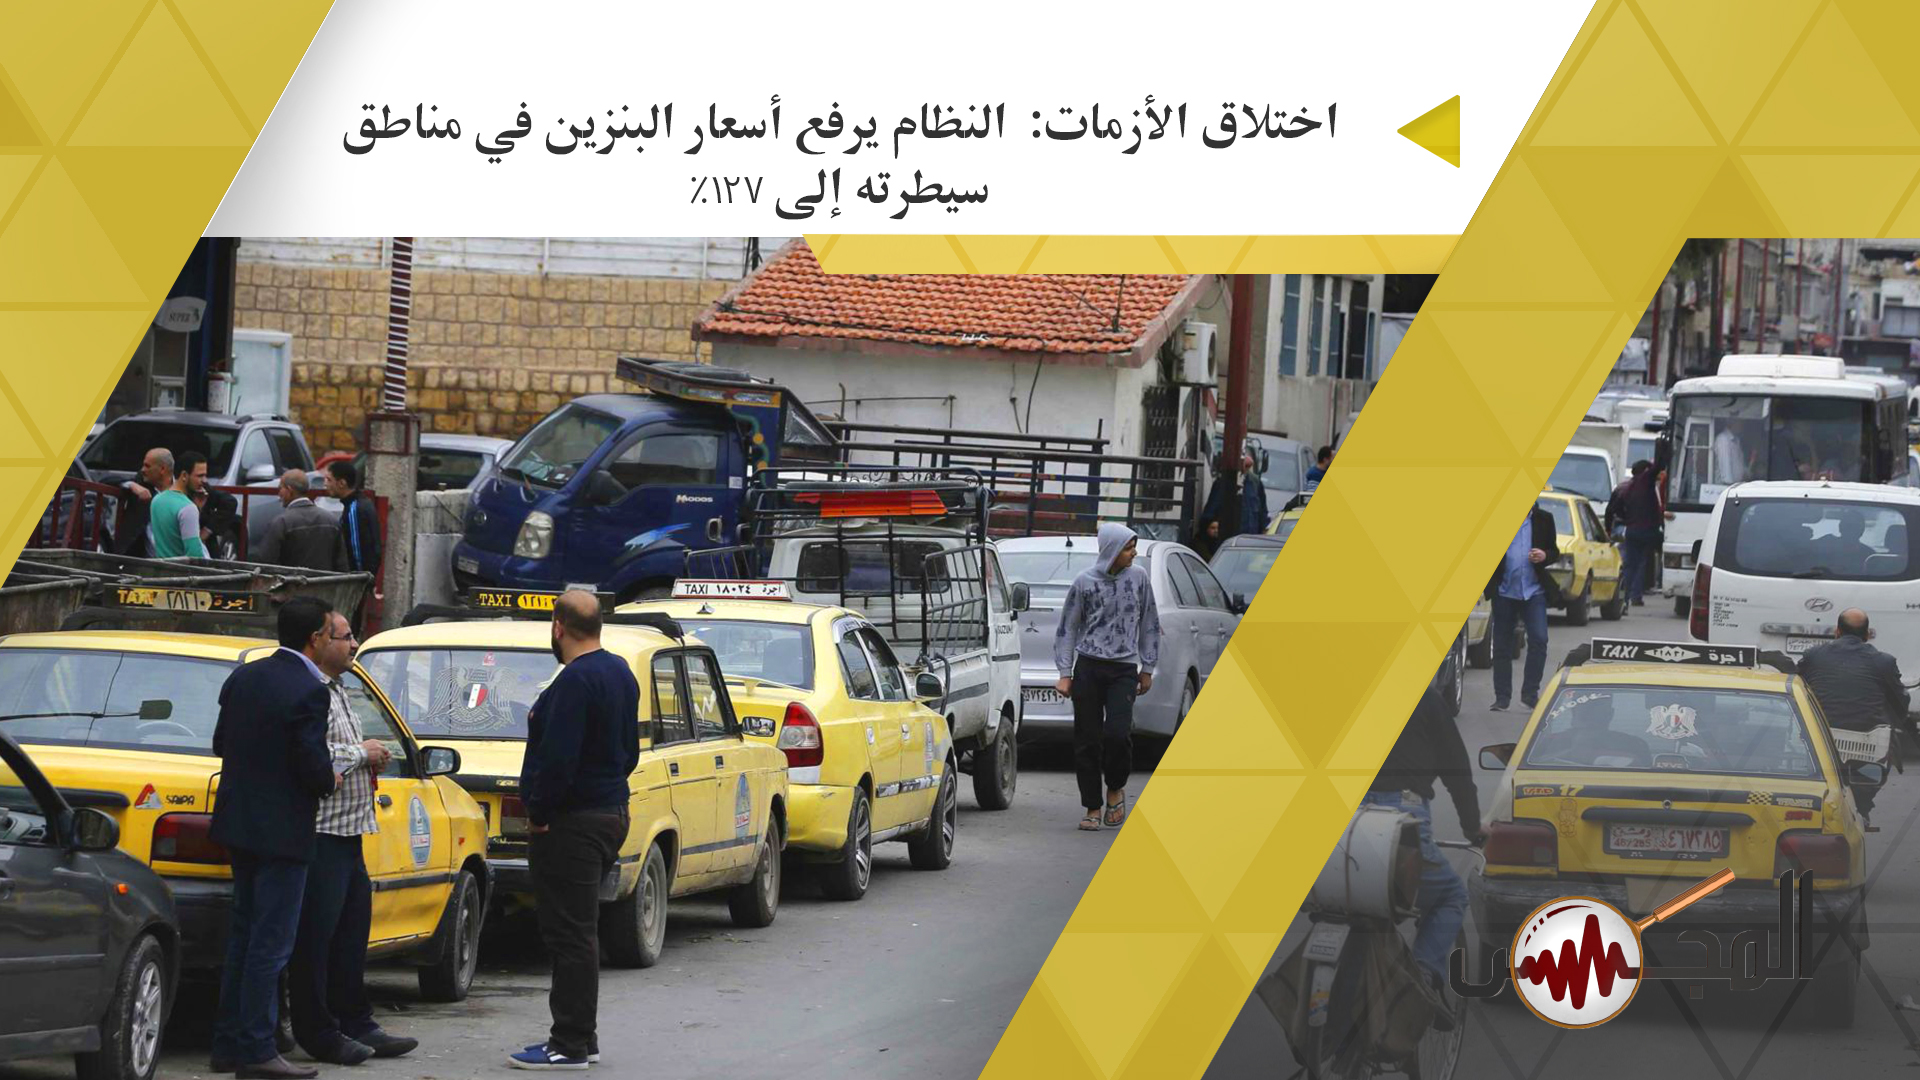 اختلاق الأزمات:  النظام يرفع أسعار البنزين في مناطق سيطرته إلى 127% 